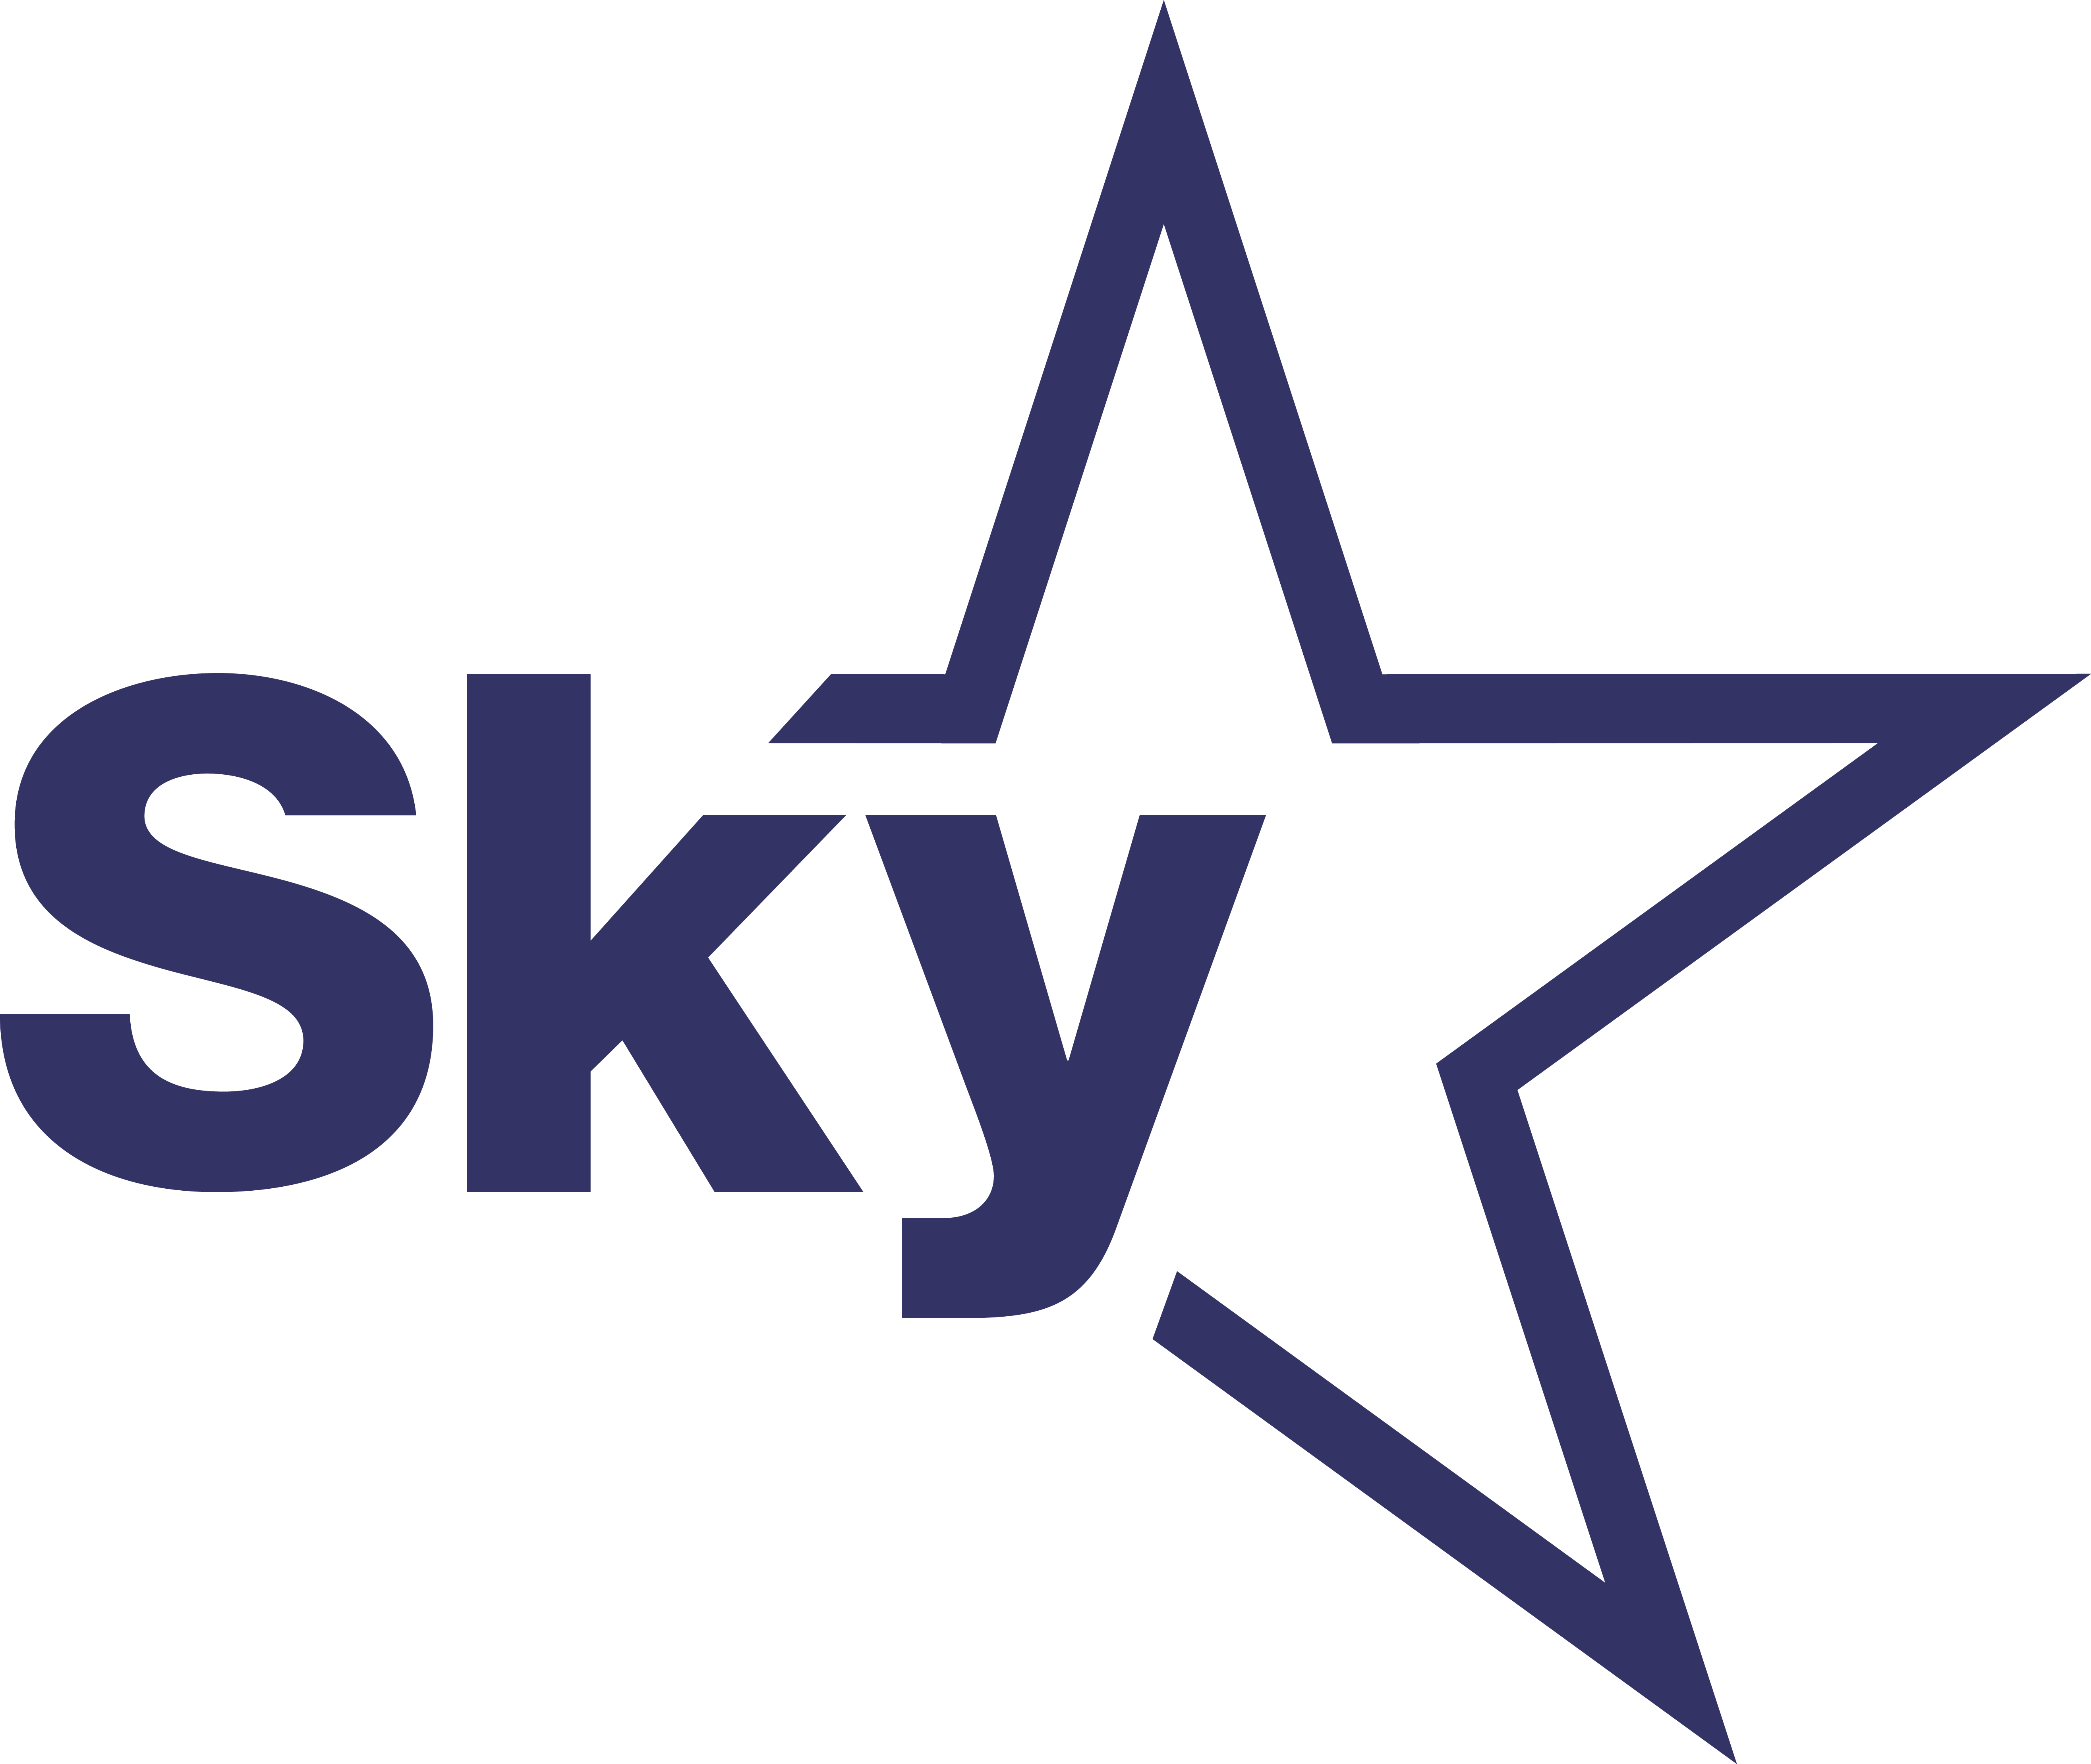 sky_logo